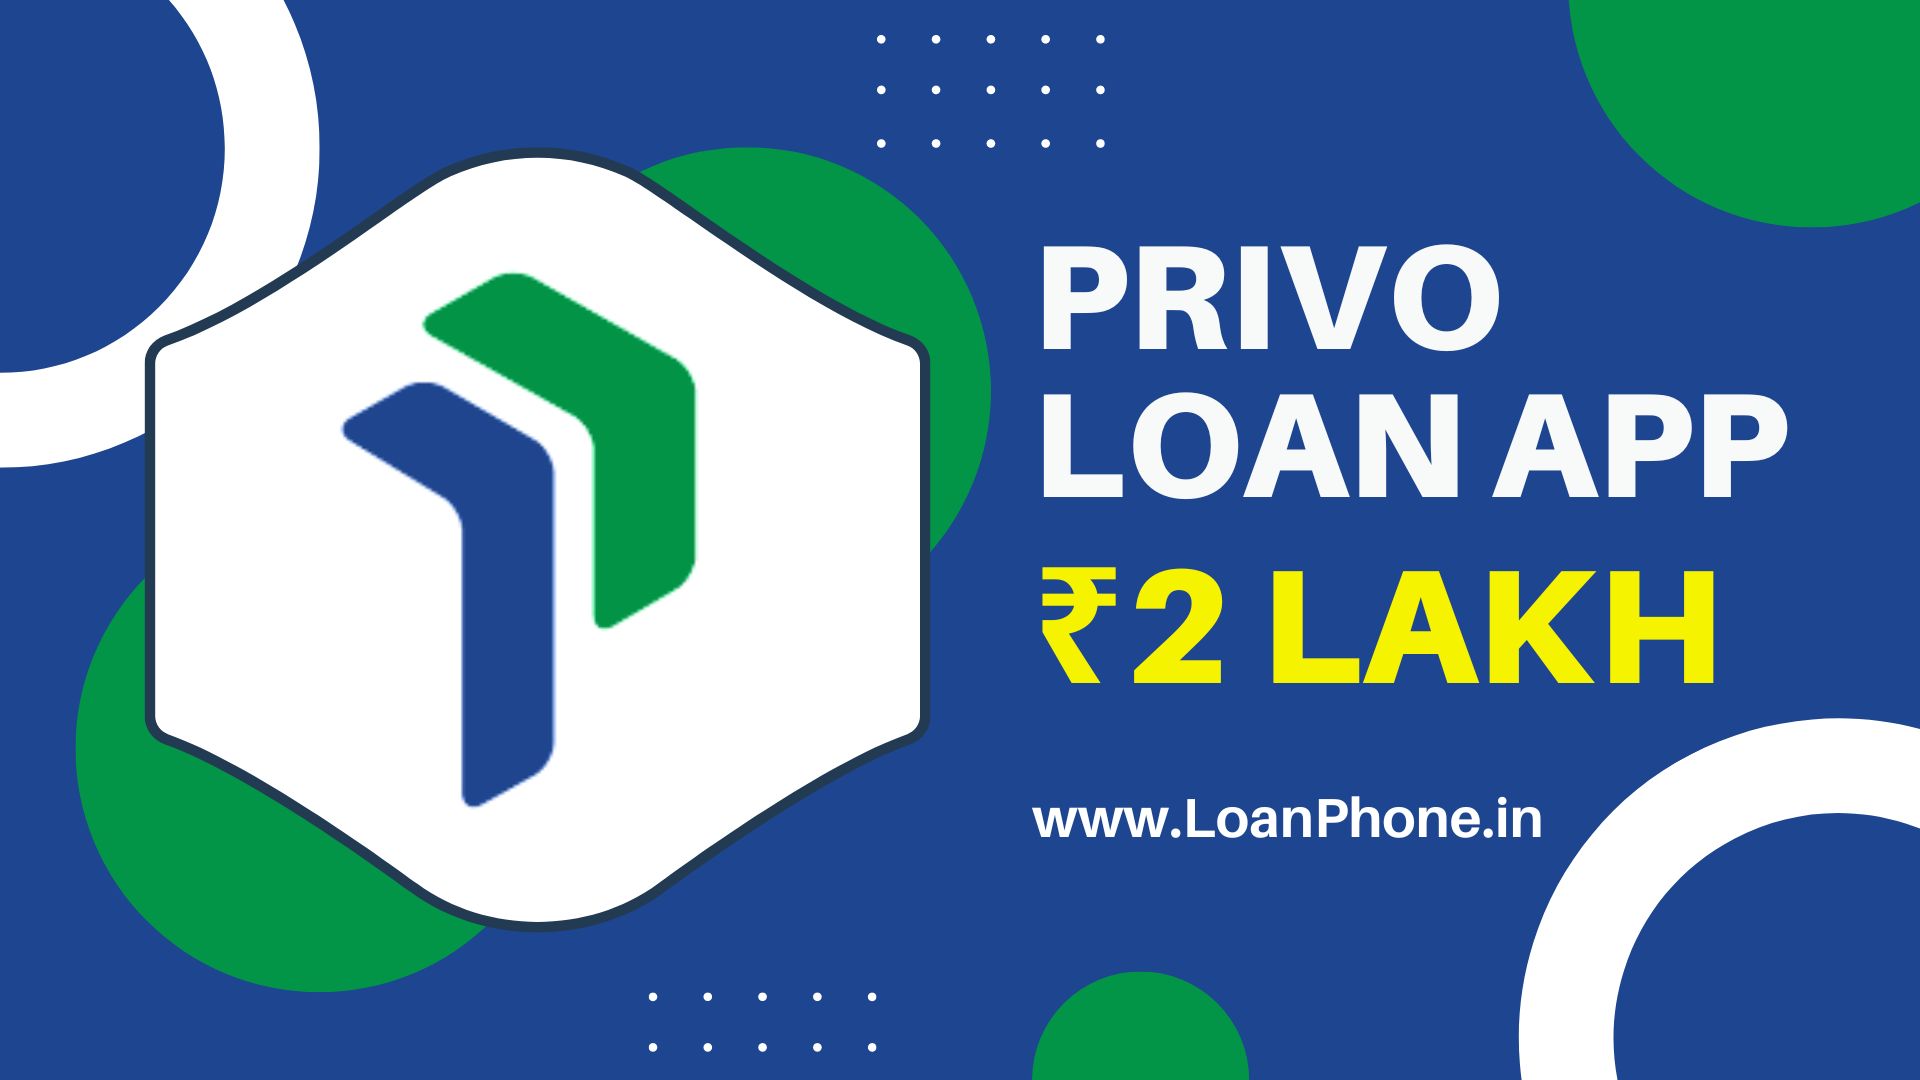 Privo Loan App से कितने तक का लोन मिल सकता है?